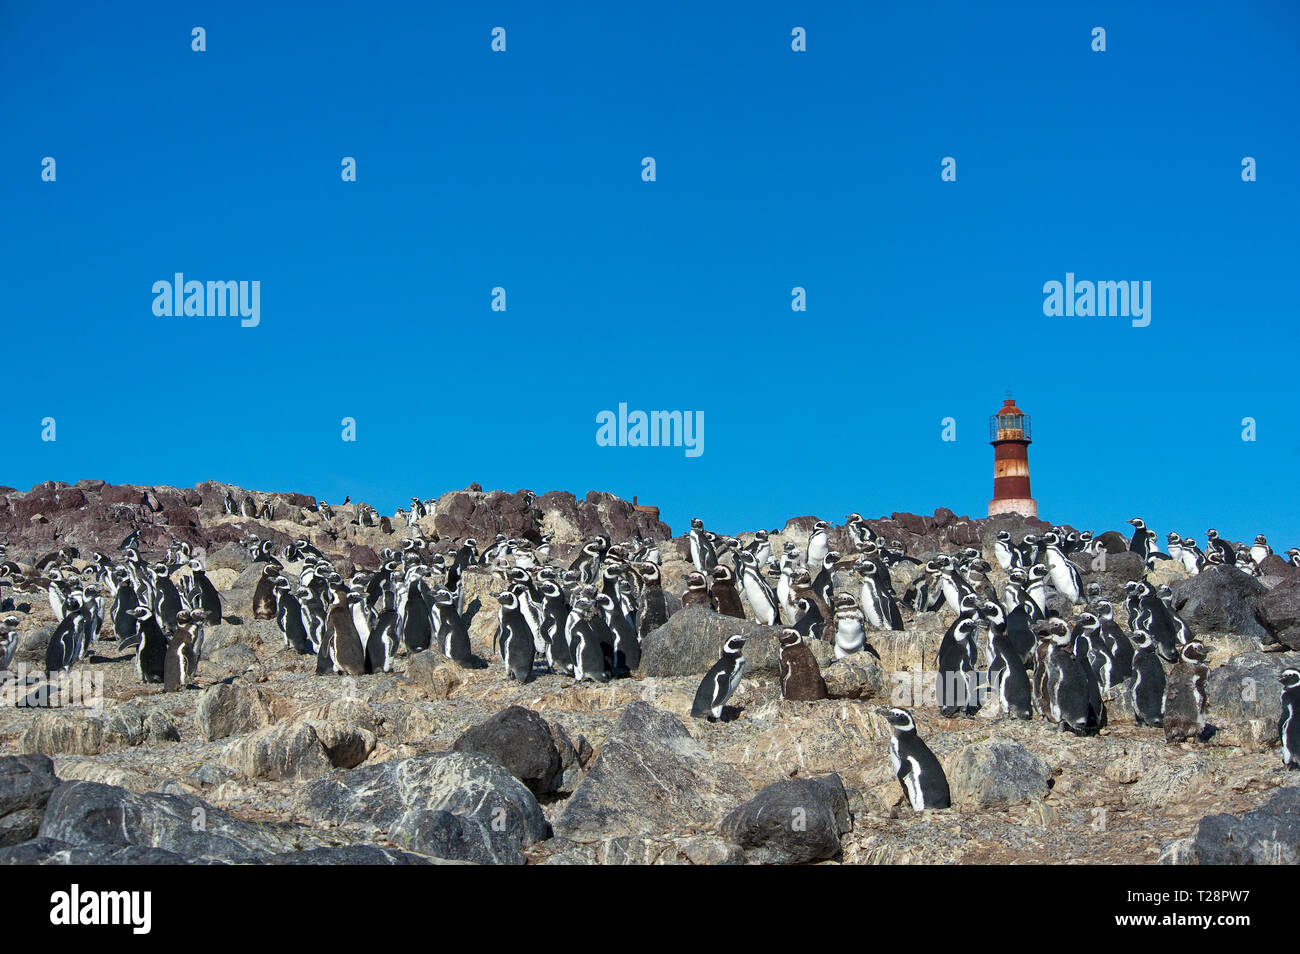 Magellanic penguins (Spheniscus magellanicus), colony at lighthouse, Puerto Deseado, Patagonia, Argentina Stock Photo